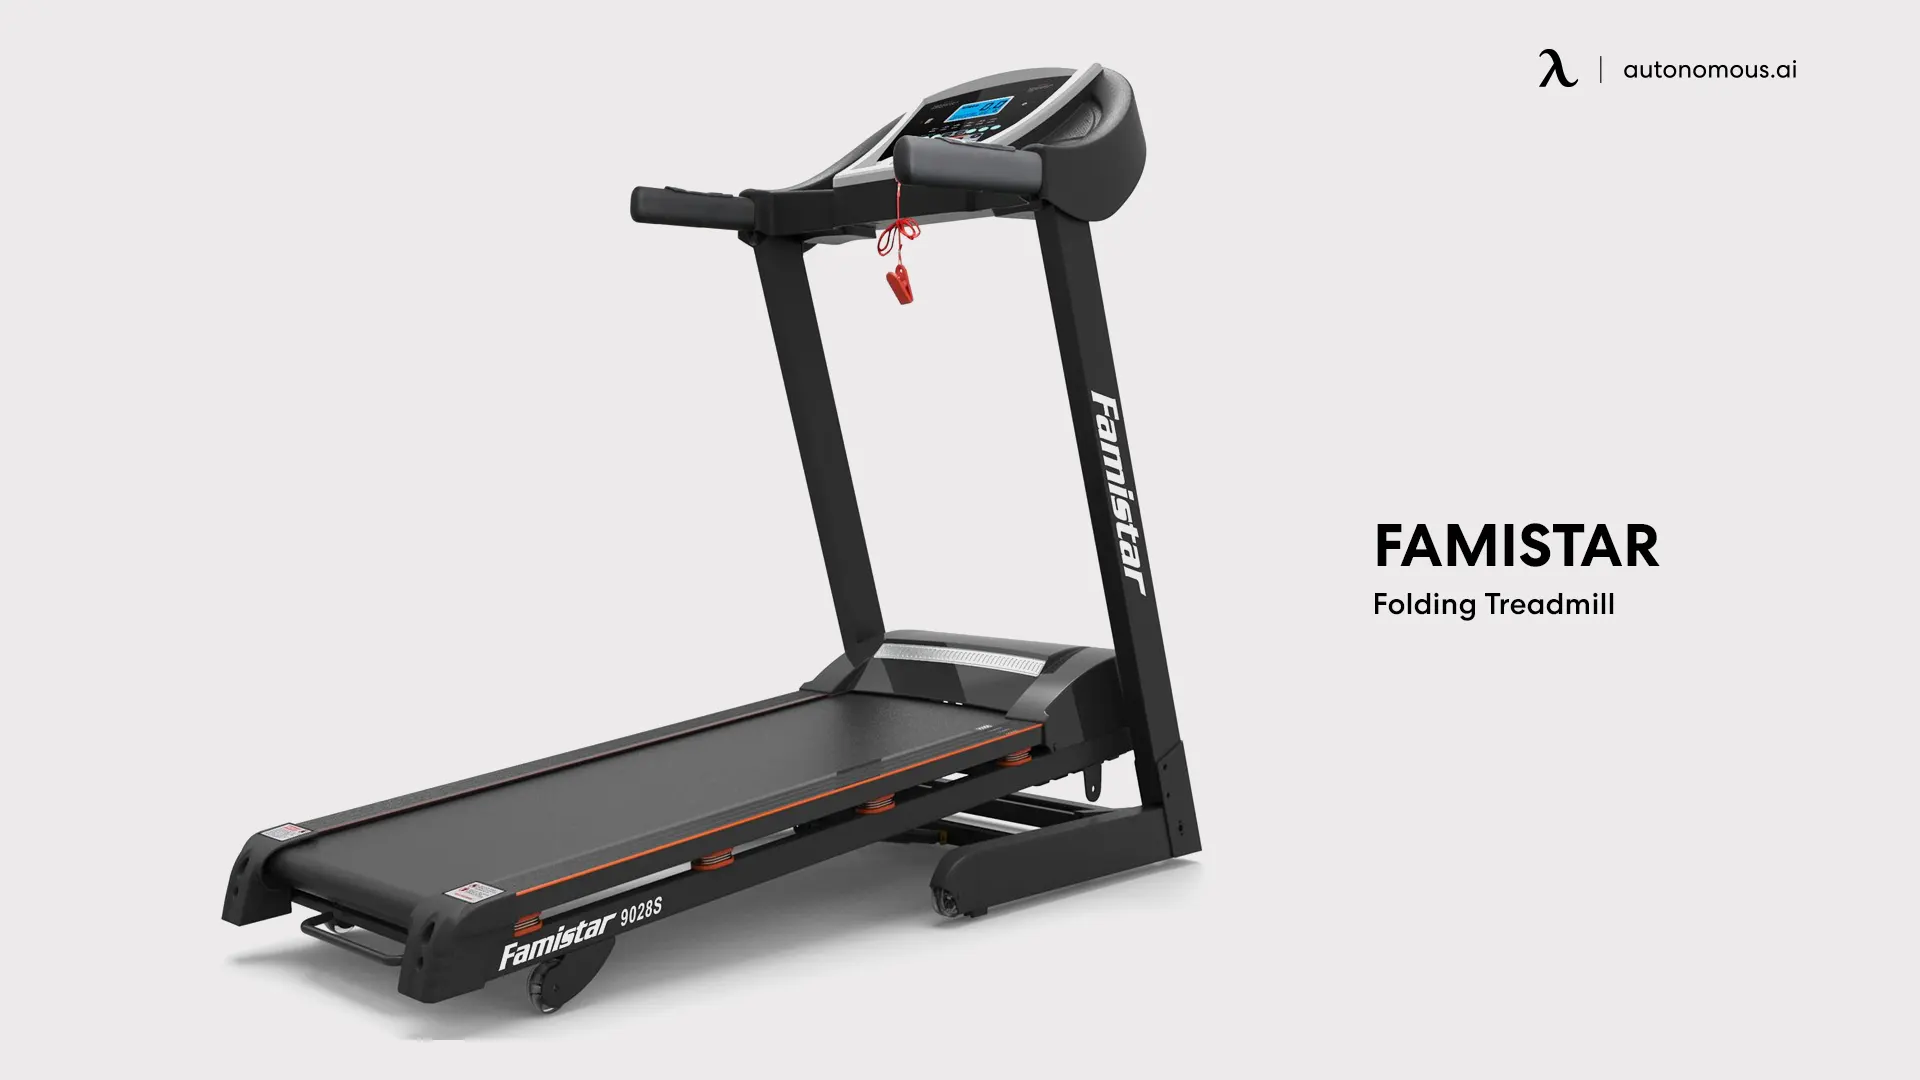 Famistar Folding Treadmill